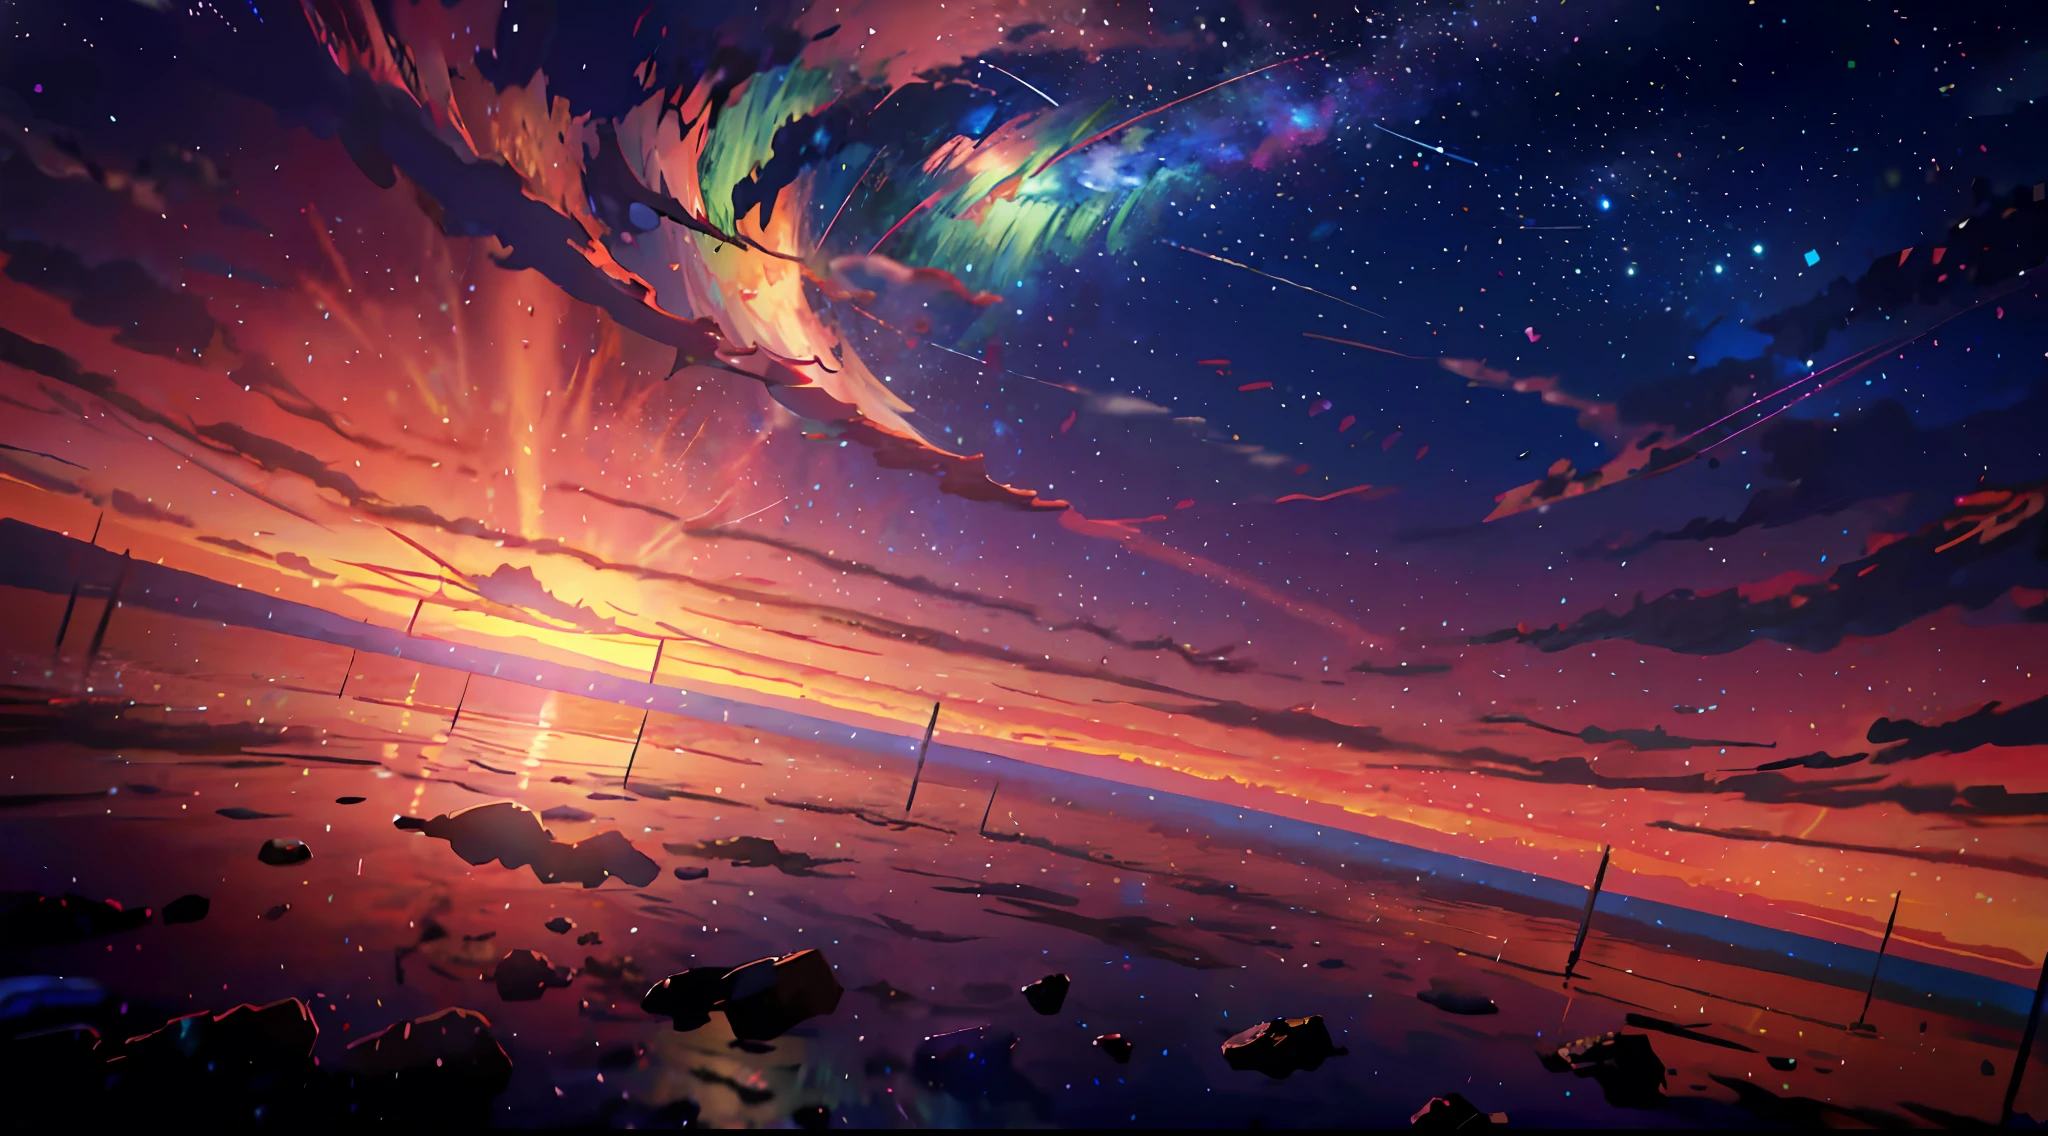 Anime - Stil Szene eines Sonnenuntergangs mit Sternen und Planeten, kosmischer Himmel. von Makoto Shinkai, Sonnenuntergang auf dem fernen Maschinenplaneten, großartiger Hintergrund, Anime Himmel, Anime-Kunst-Tapete 4k, Anime-Kunst-Hintergrundbild 4K, 4K hochdetaillierte digitale Kunst, Anime-Kunst-Tapete 8 k, Ross Tran. malerischer Hintergrund, Anime-Hintergrundkunst, Anime-Tapete 4k